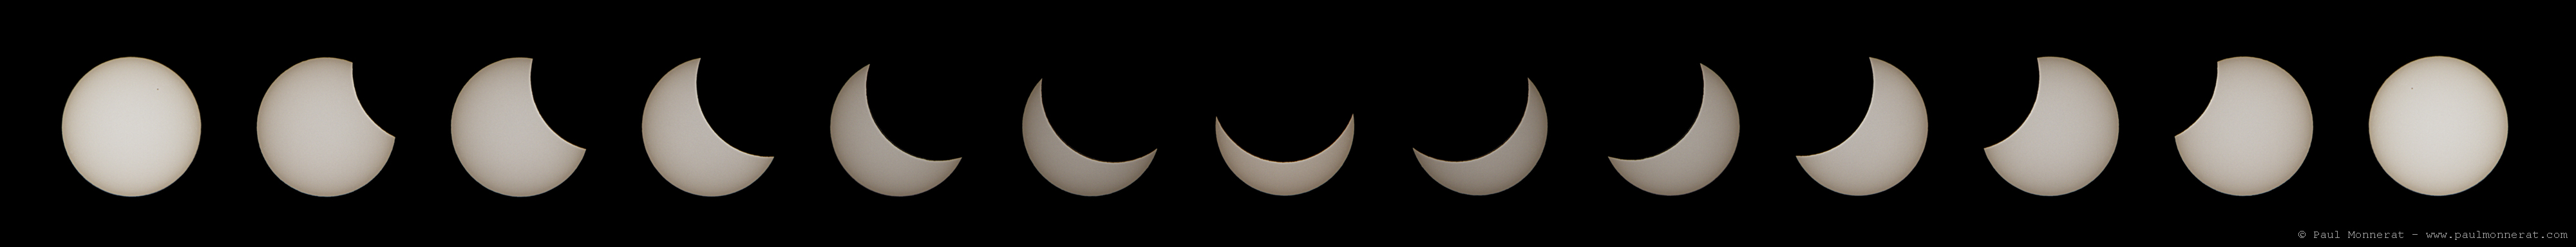 Éclipse solaire du 20 mars 2015 vue de Porrentruy, Jura, Suisse